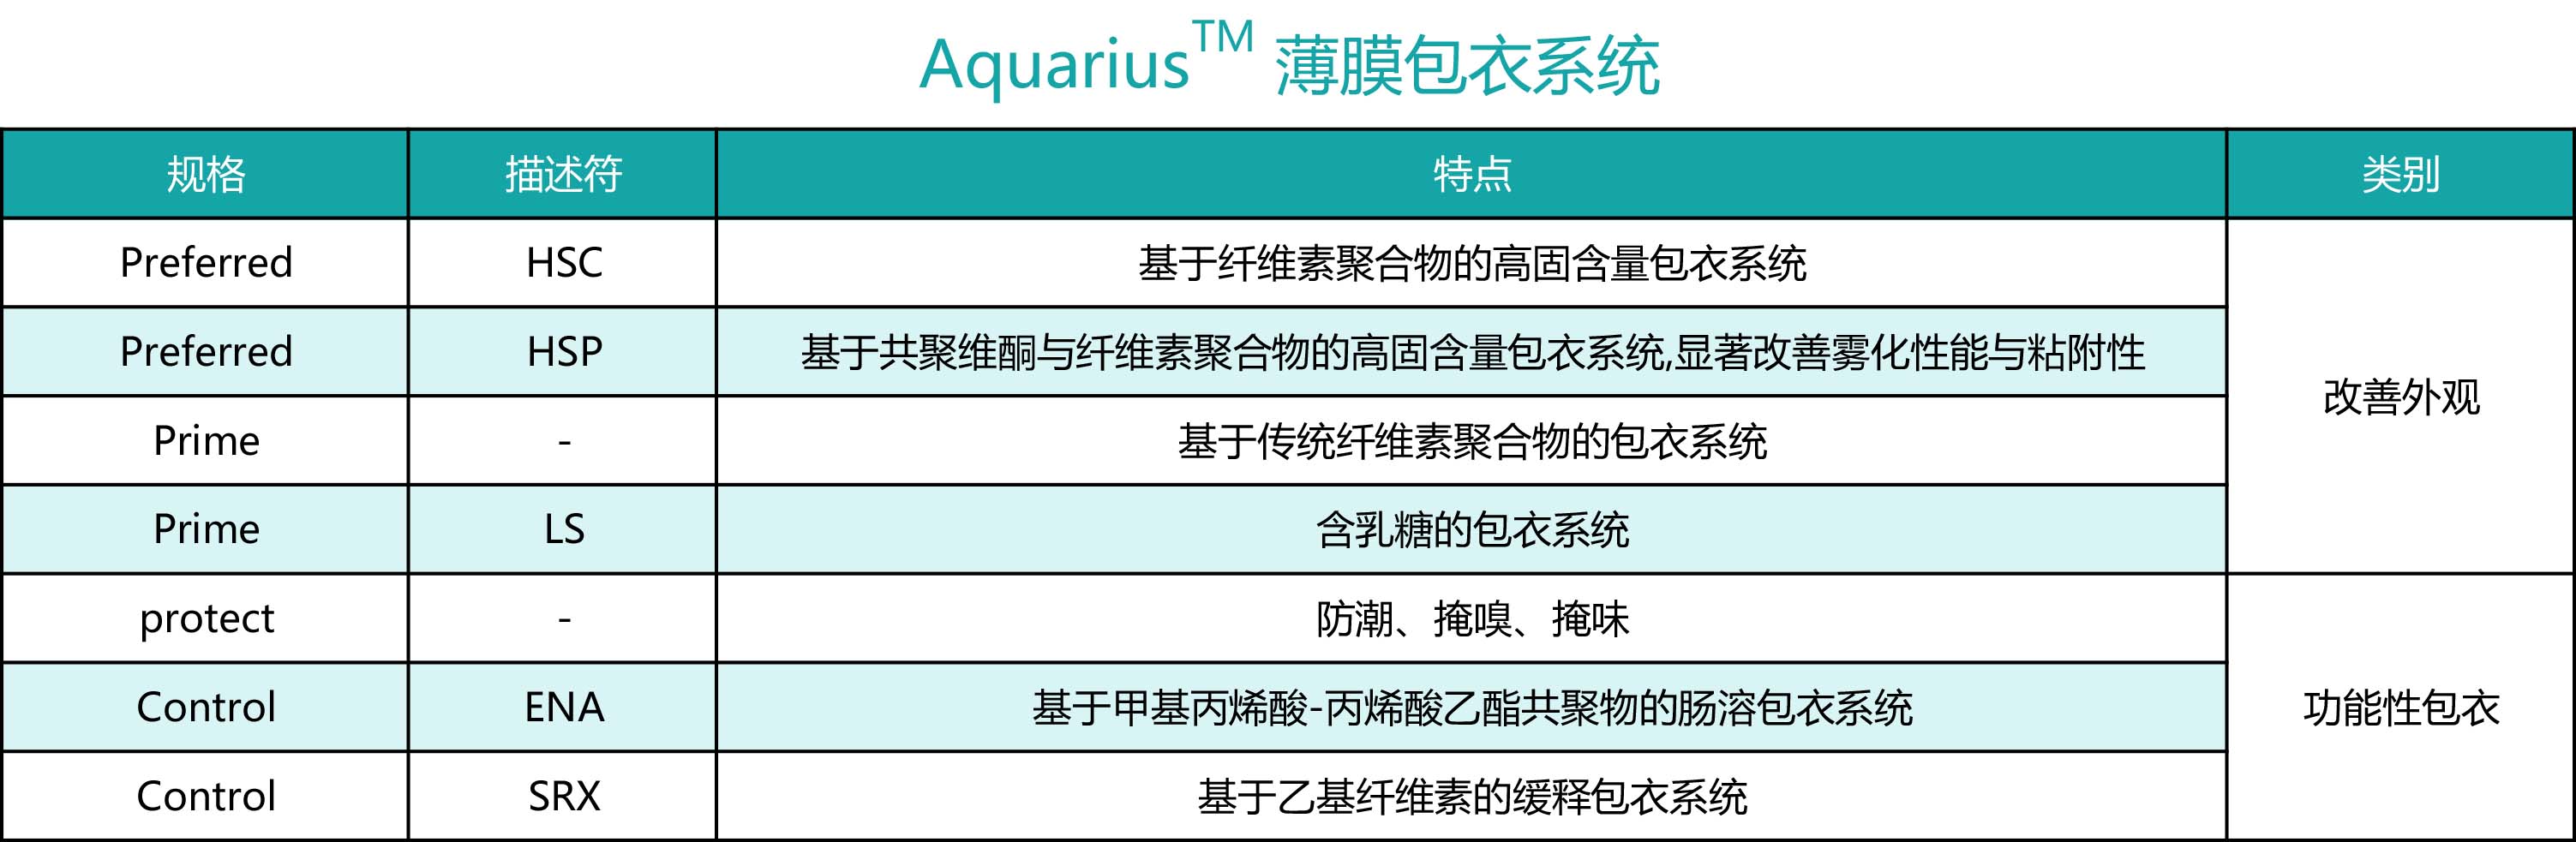 亚什兰Aquarius™ 薄膜包衣系统HSC